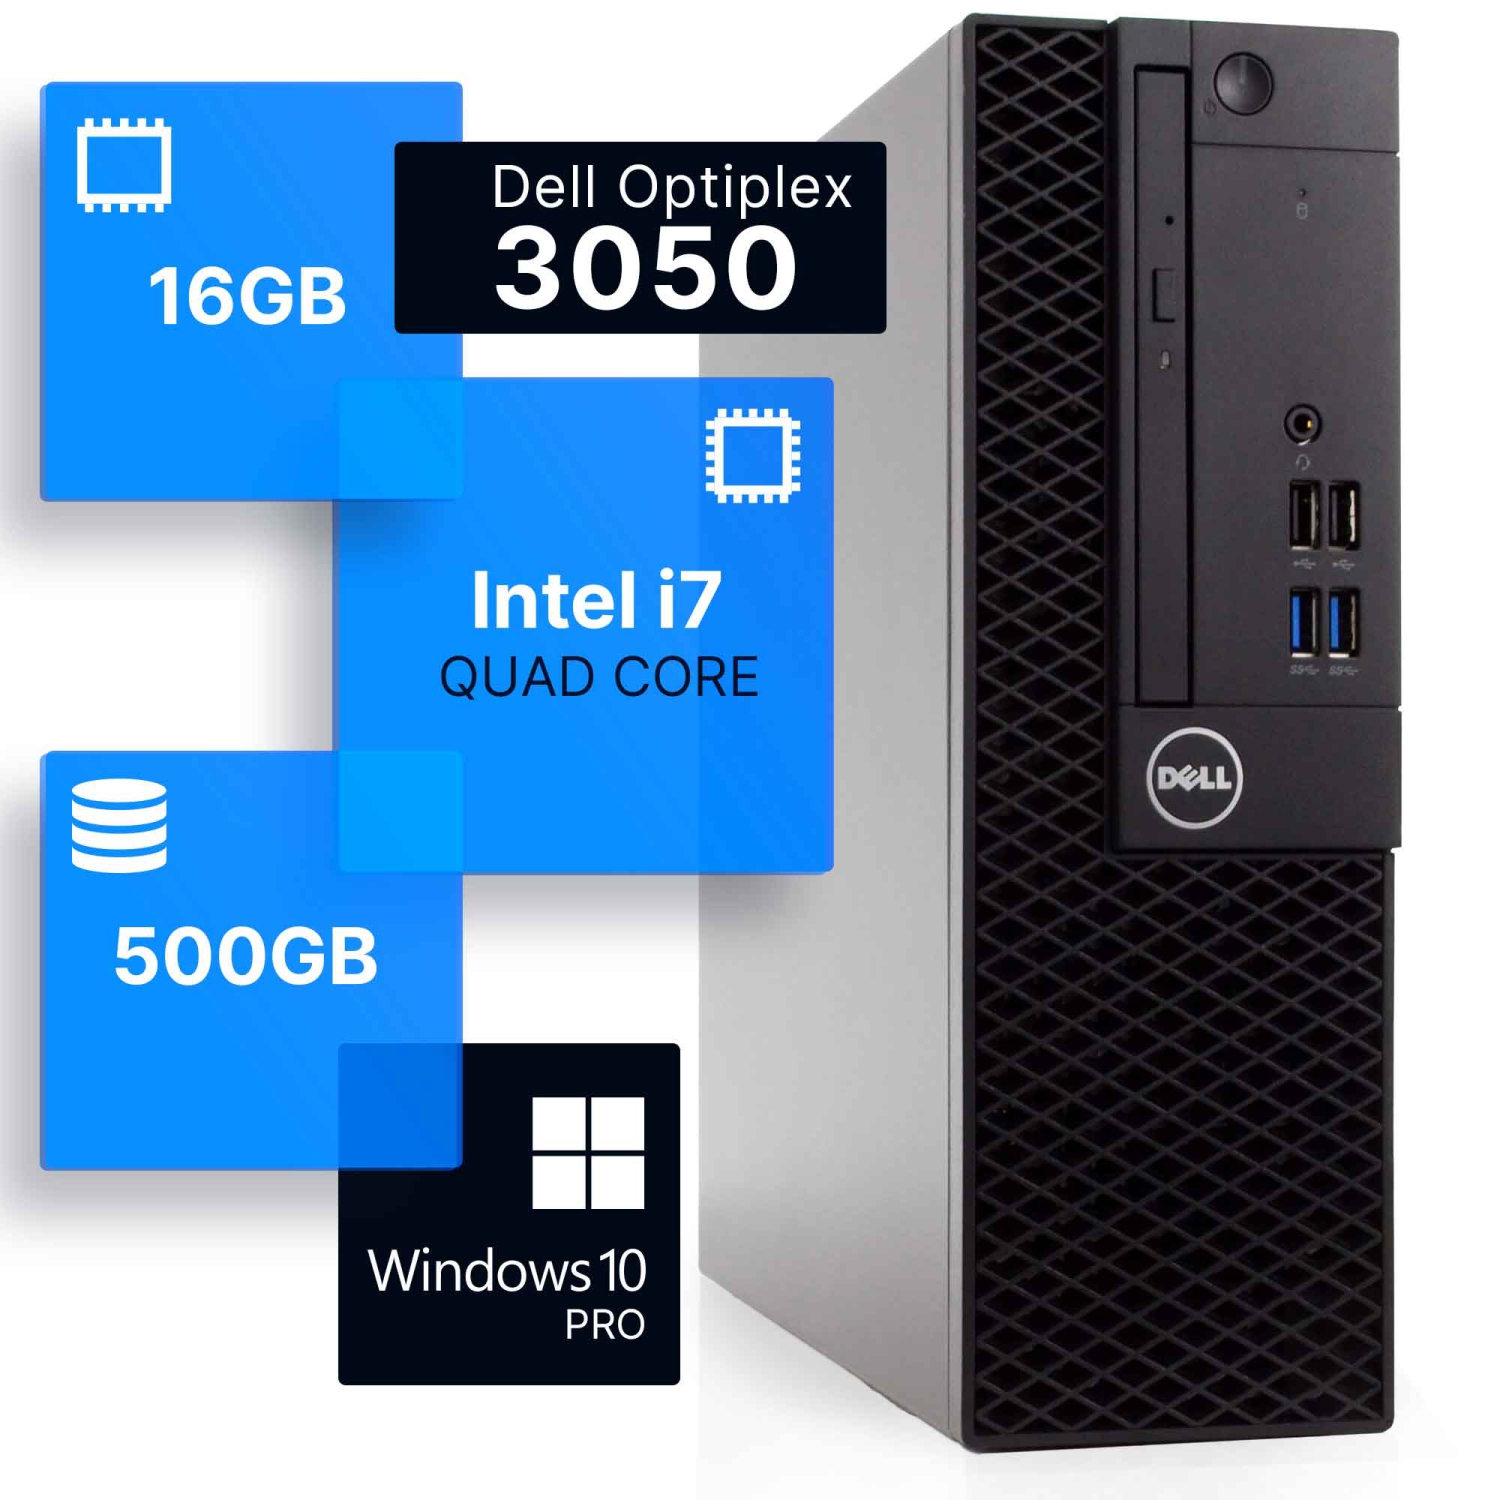 Refurbished (Good) - Dell Optiplex 3050 Desktop Computer | Quad Intel i7 (3.4)Gen 7 | 16GB DDR4 RAM | 500GB SSD | Windows 10 Professional | Built-in Wi-Fi AX200